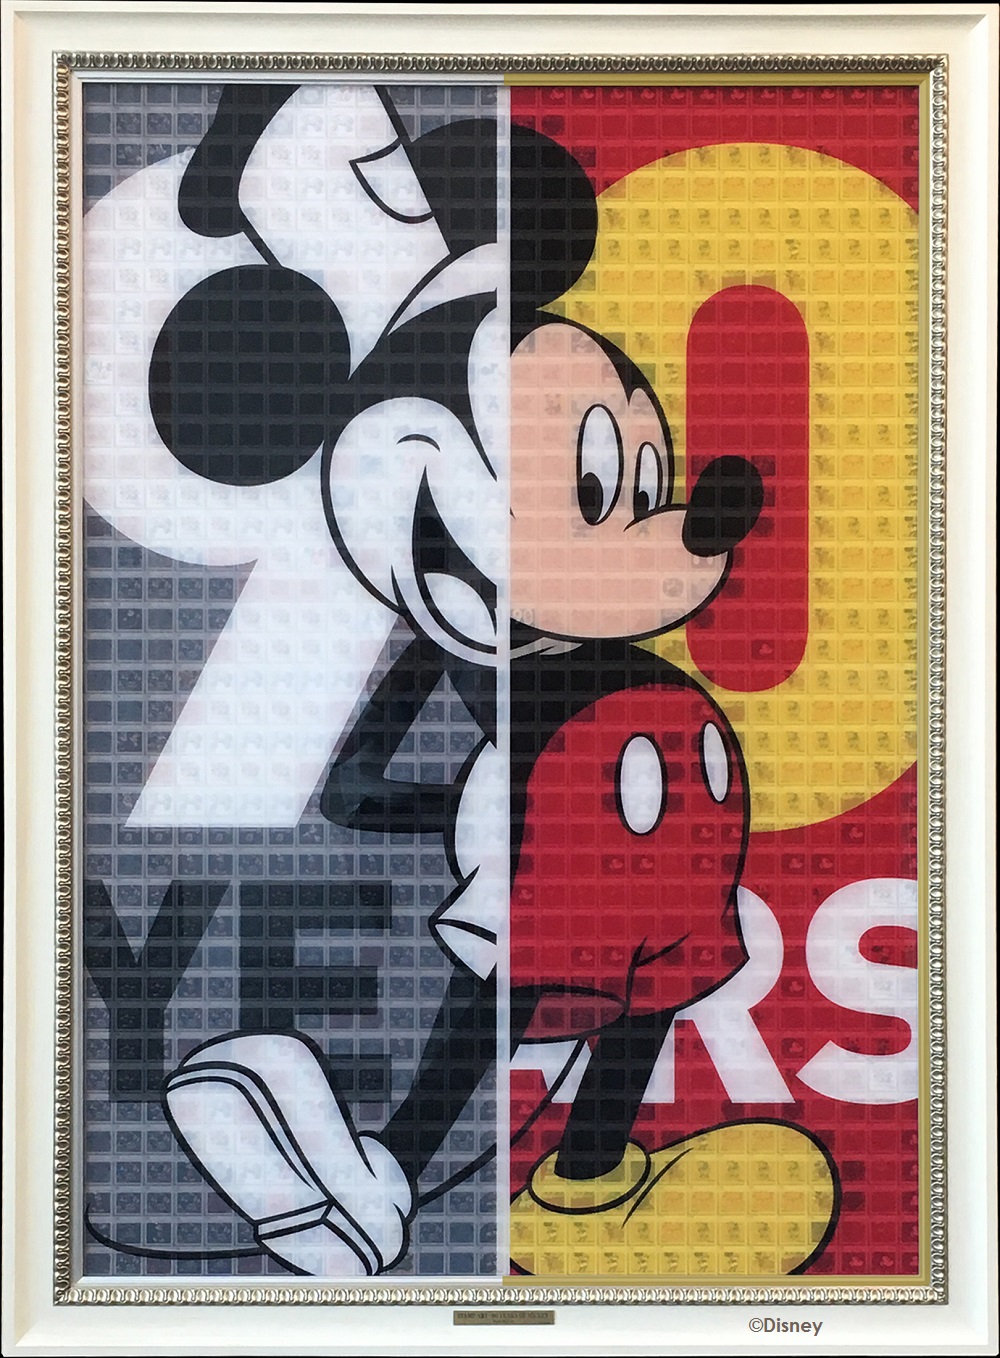 ミッキーマウス スクリーンデビュー90周年記念番組 Qvc独占販売 1092枚もの切手で制作されたスタンプアートも登場 ファン必見 ミッキーマウス グッズが勢揃い11月16日 金 Qvcにて放送 株式会社 ｑｖｃジャパンのプレスリリース